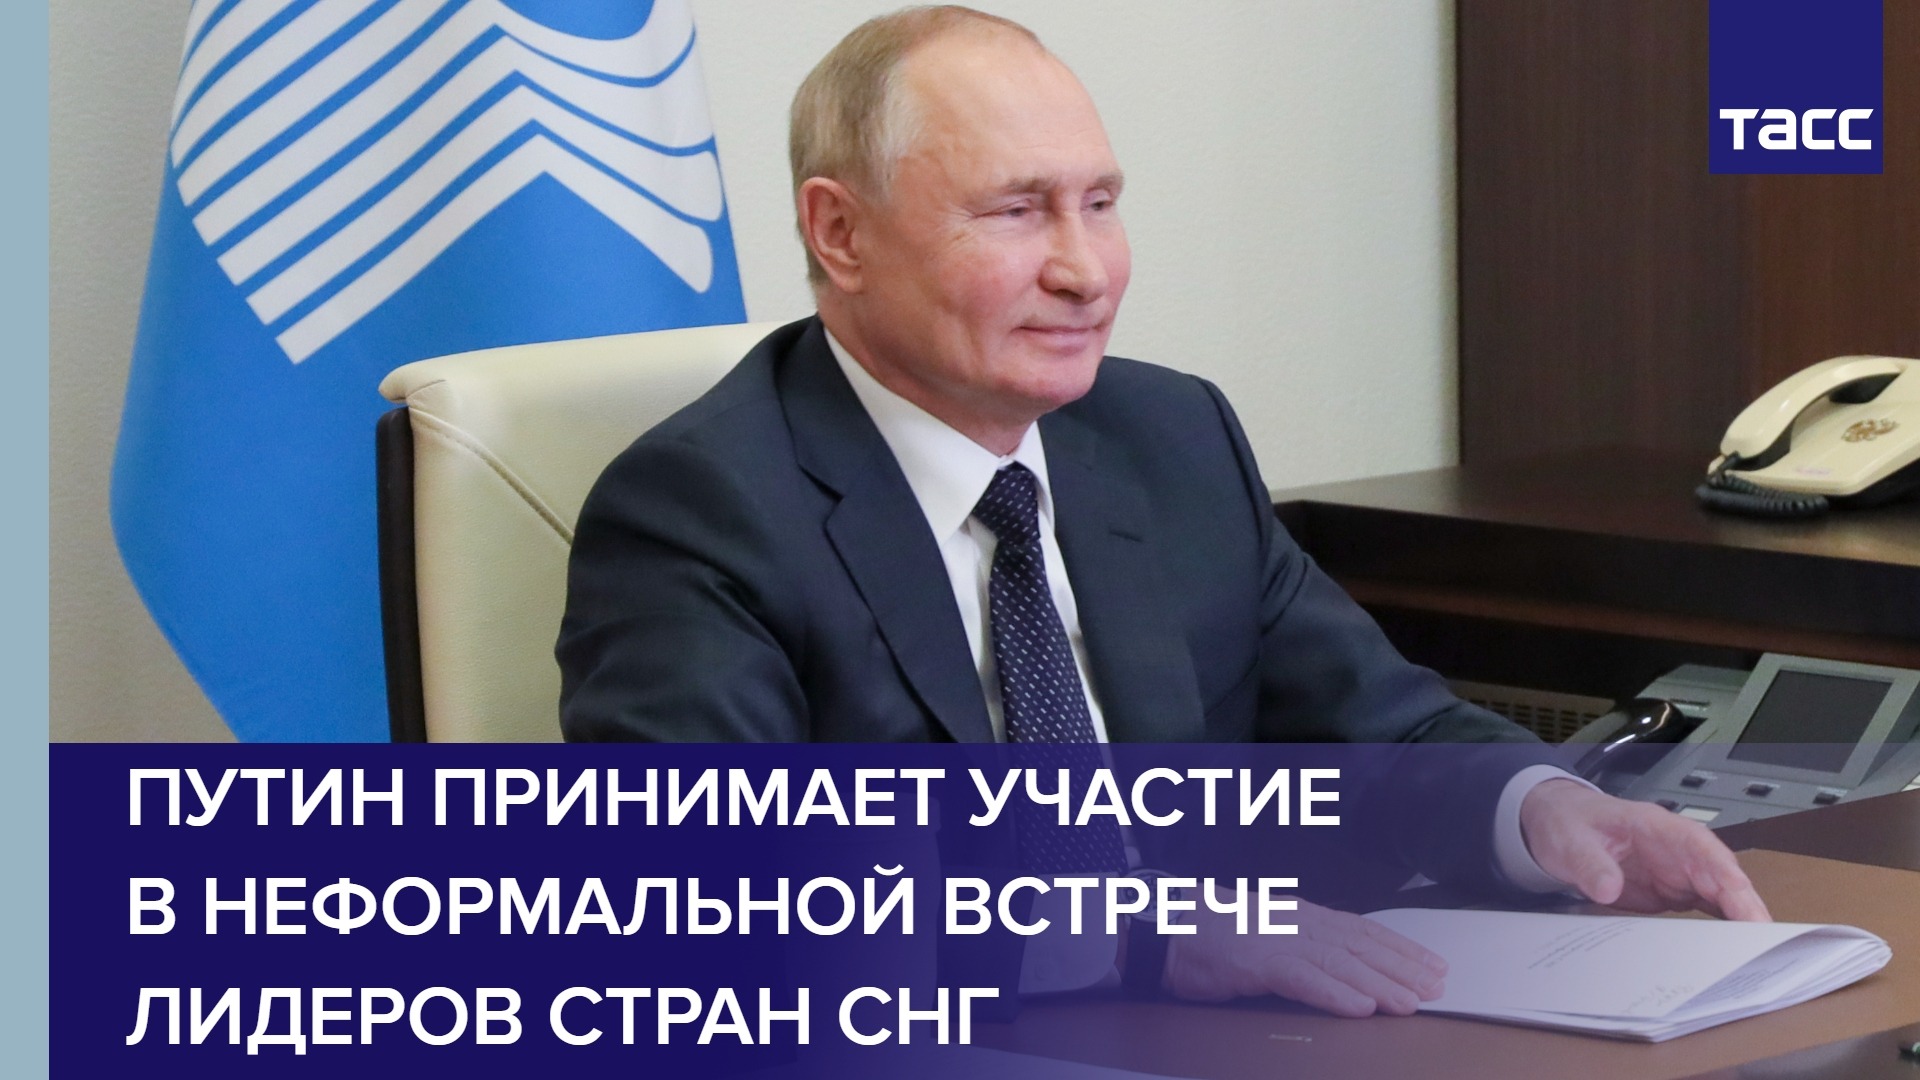 Путин принимает участие в неформальной встрече лидеров стран СНГ